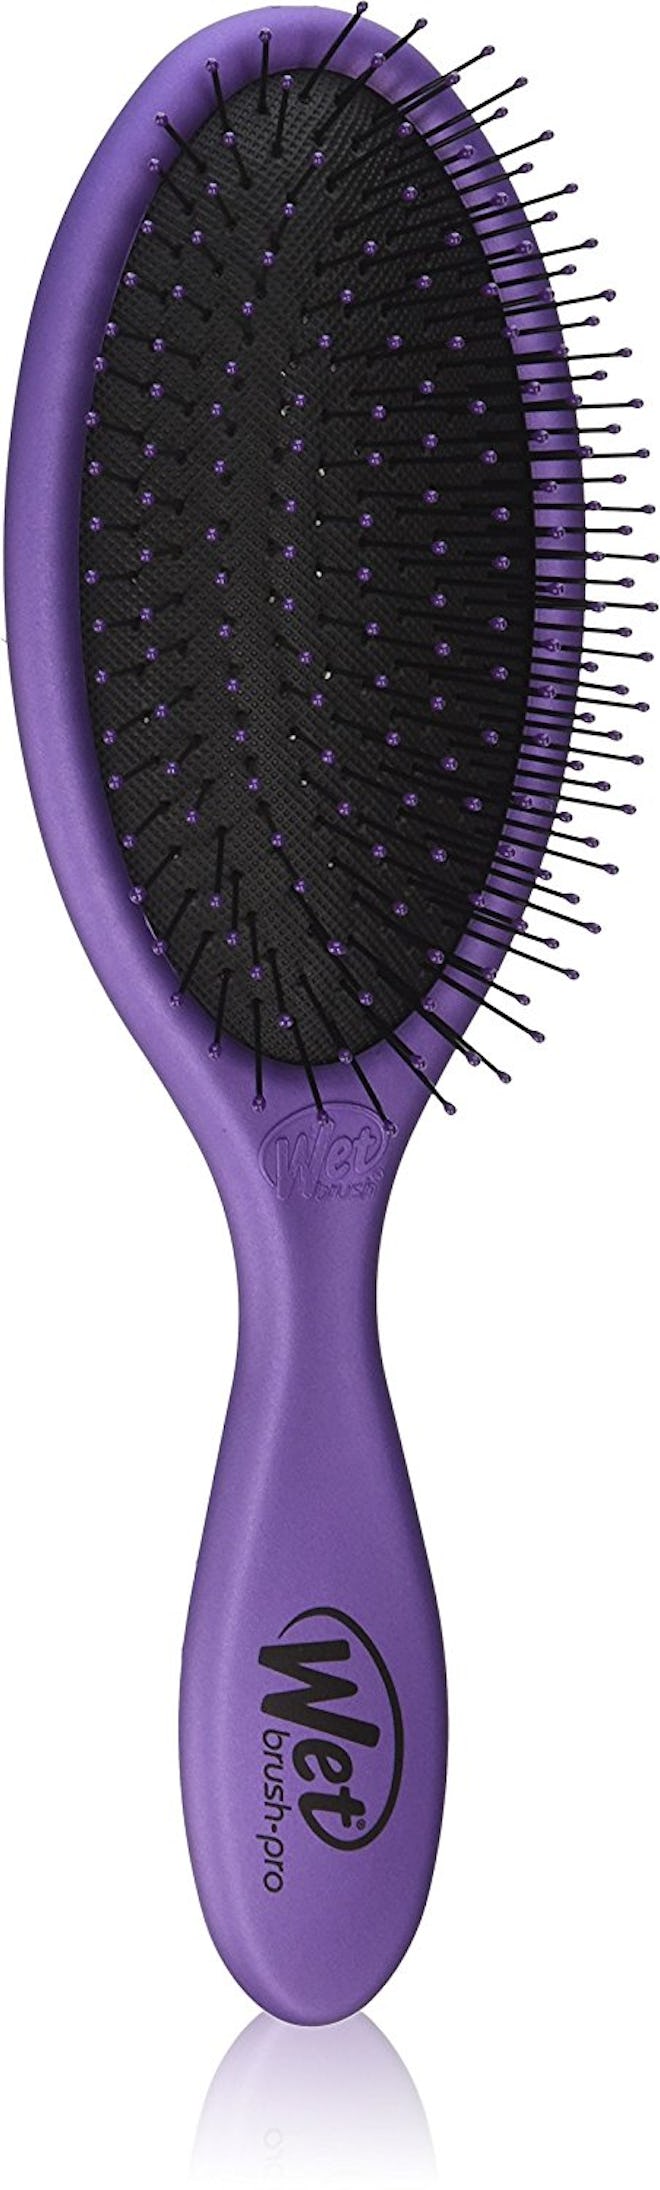 Wet Brush Pro Detangling Hair Brush